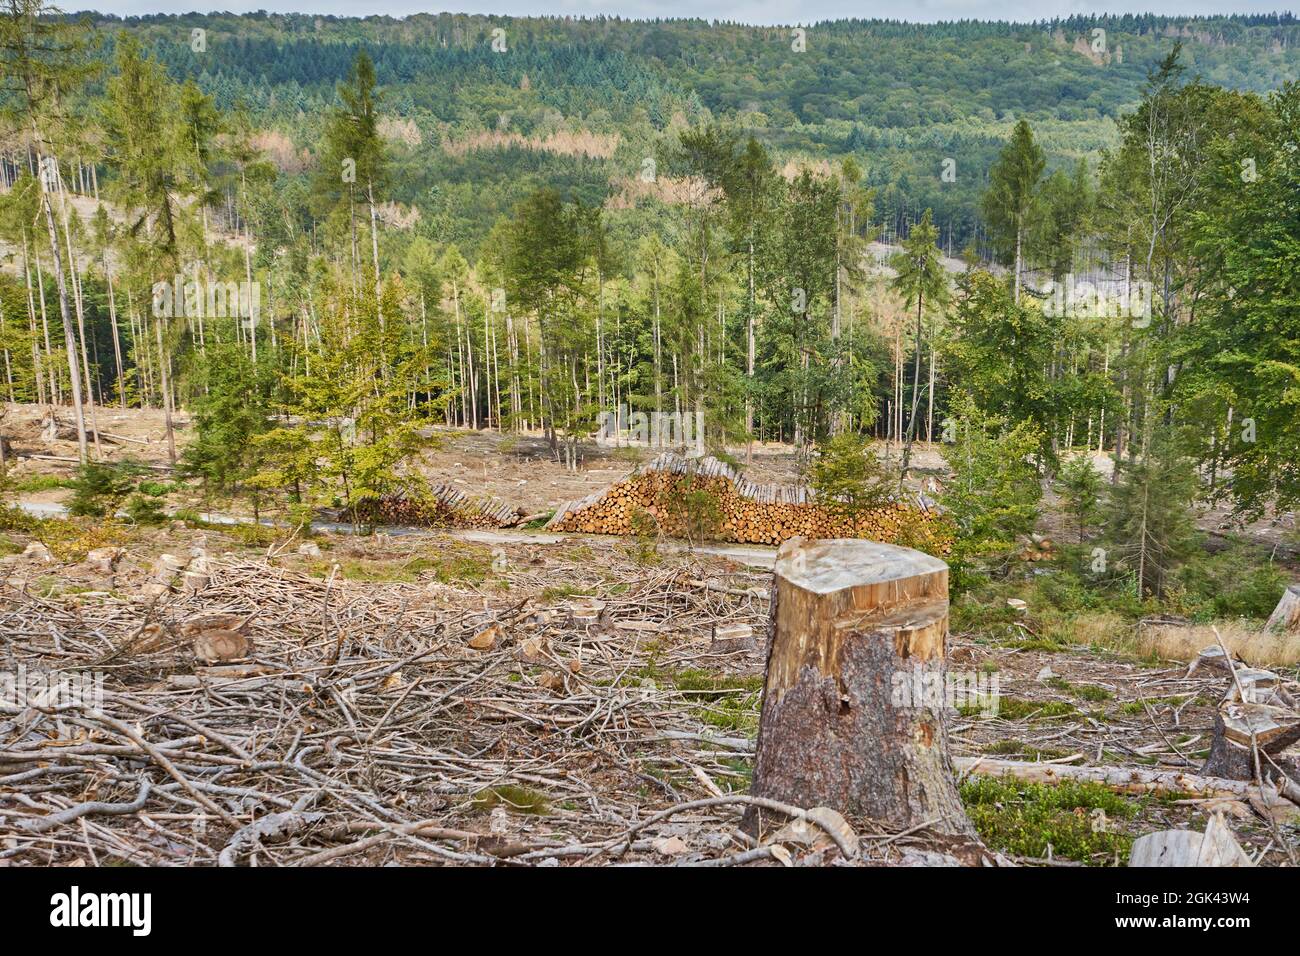 Kahlschlag, durch Trockenheit und Borkenkäfer geschädigter Wald, Rheingaugebirge, Taunus, Hessen, Deutschland Stock Photo